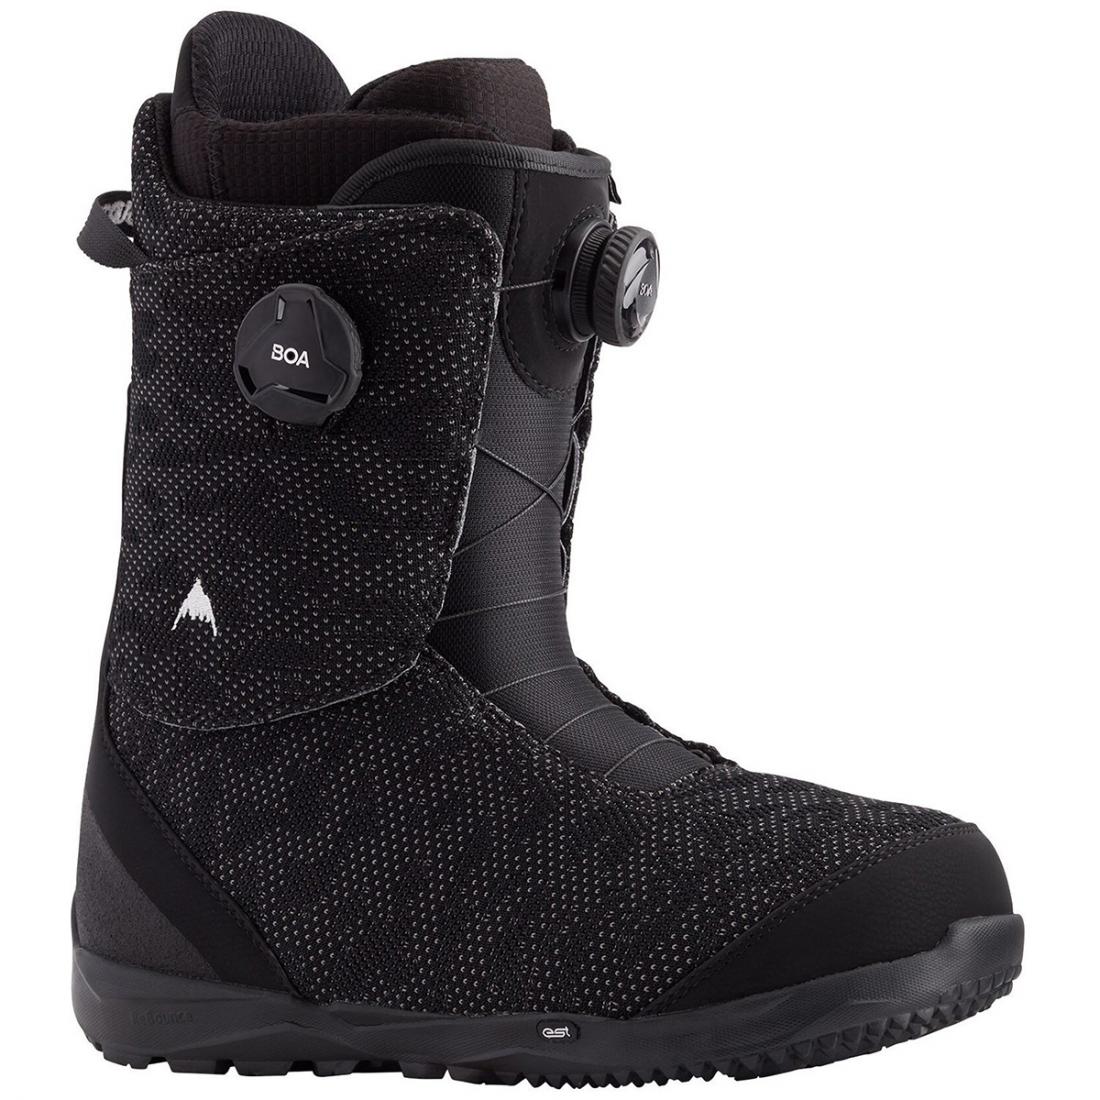 Ботинки для сноуборда Burton Swath BOA Burton, цвет черный 1, размер 8